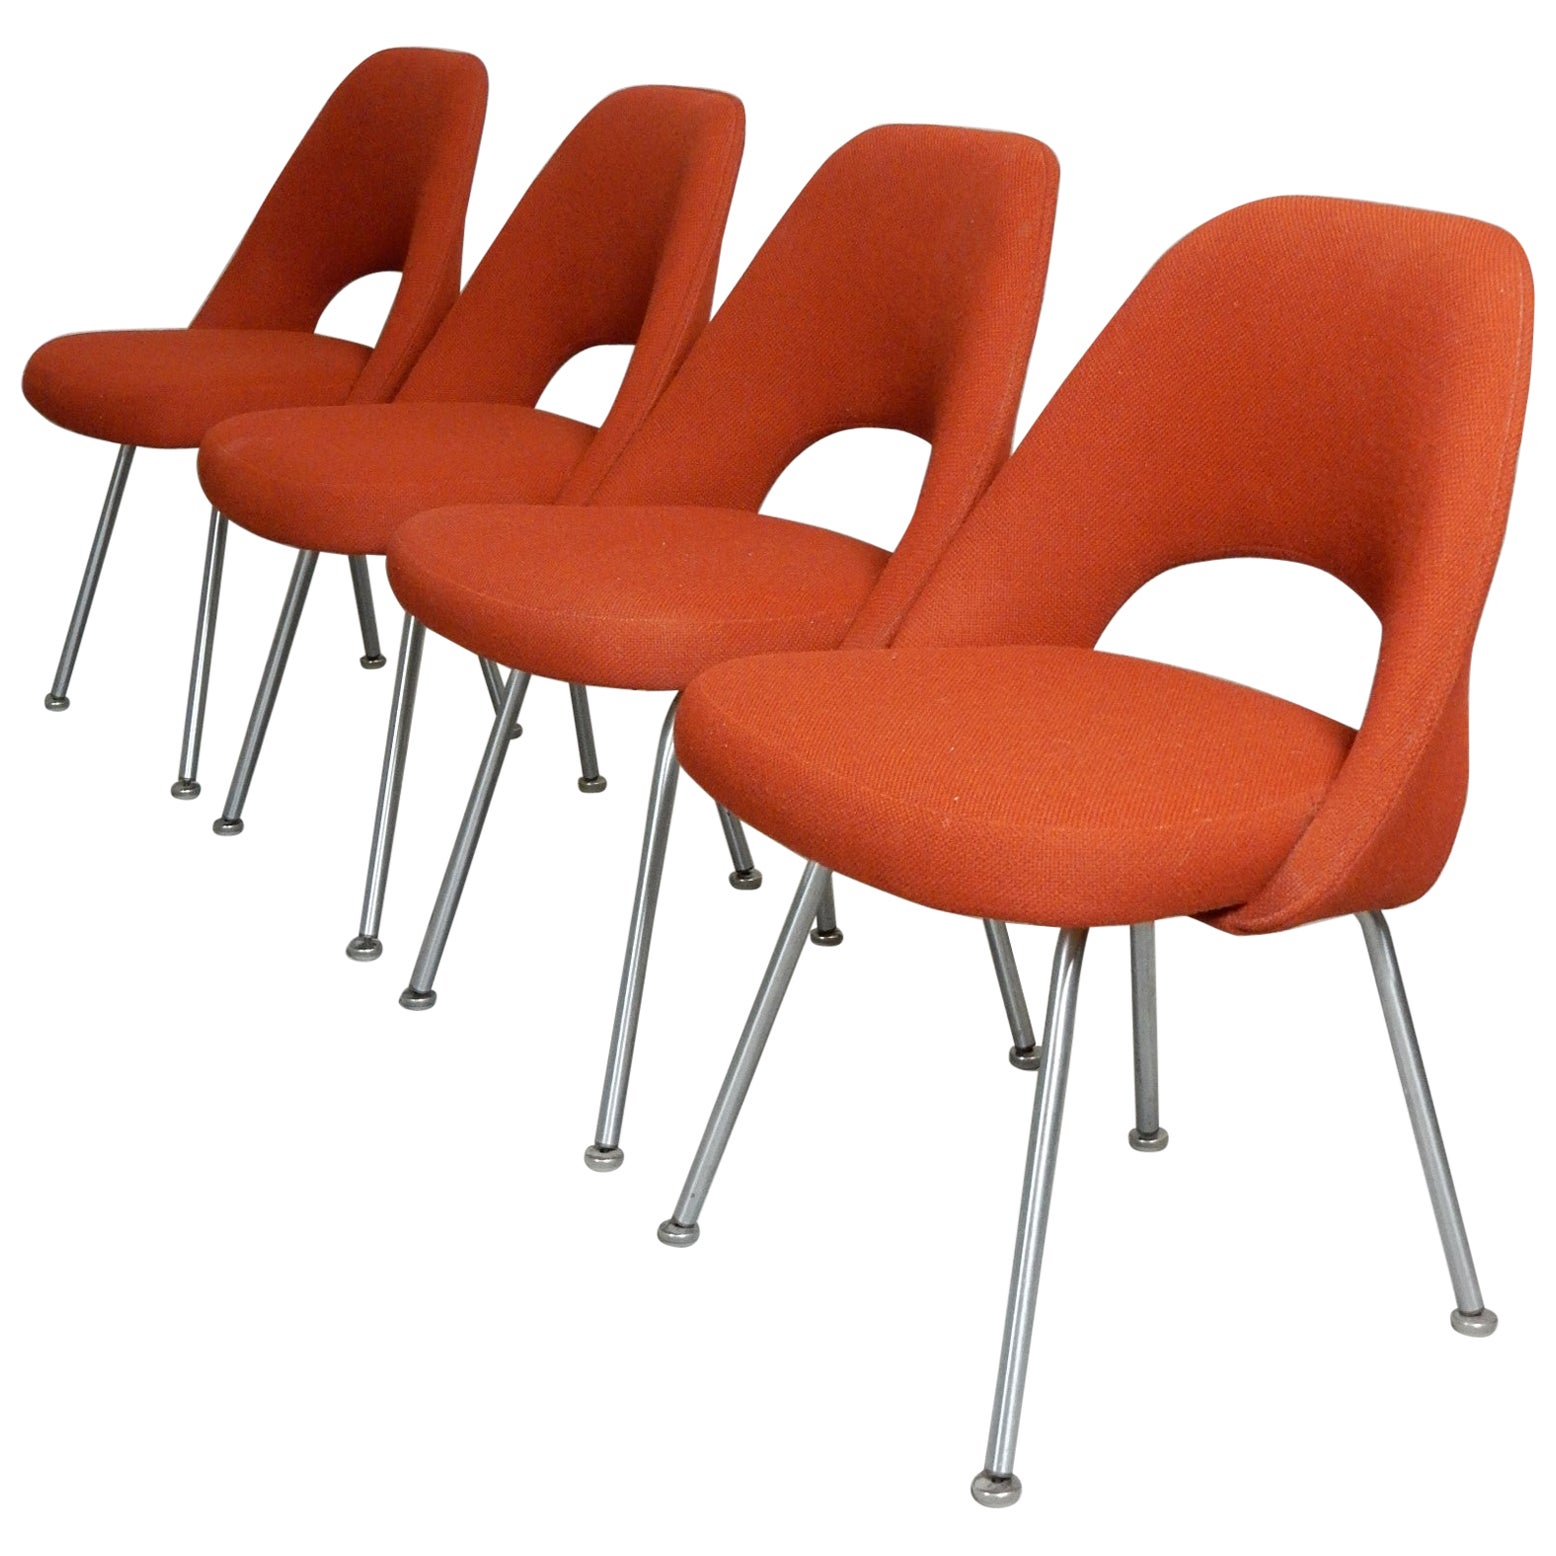 Saarinen for Knoll fauteuils de direction du milieu du siècle dernier, lot de 4, daté de 1963